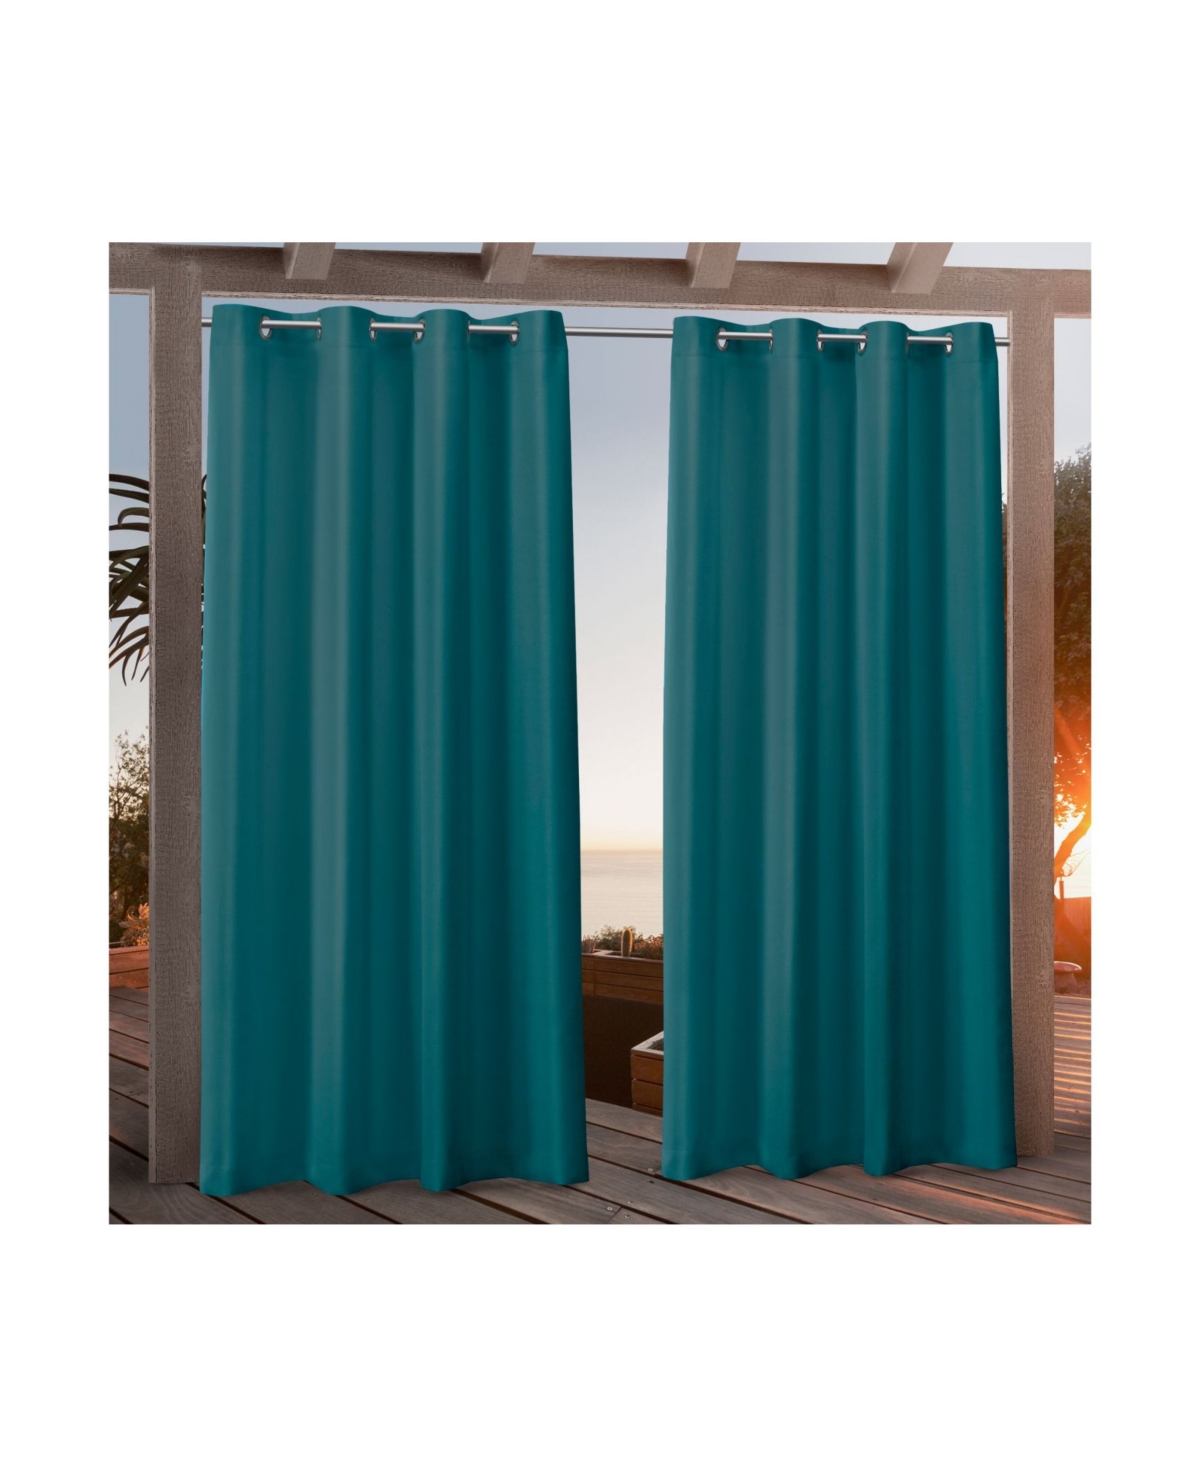 Canvas Indoor/Outdoor Grommet Top 54" X 96" Curtain Panel Pair - Green